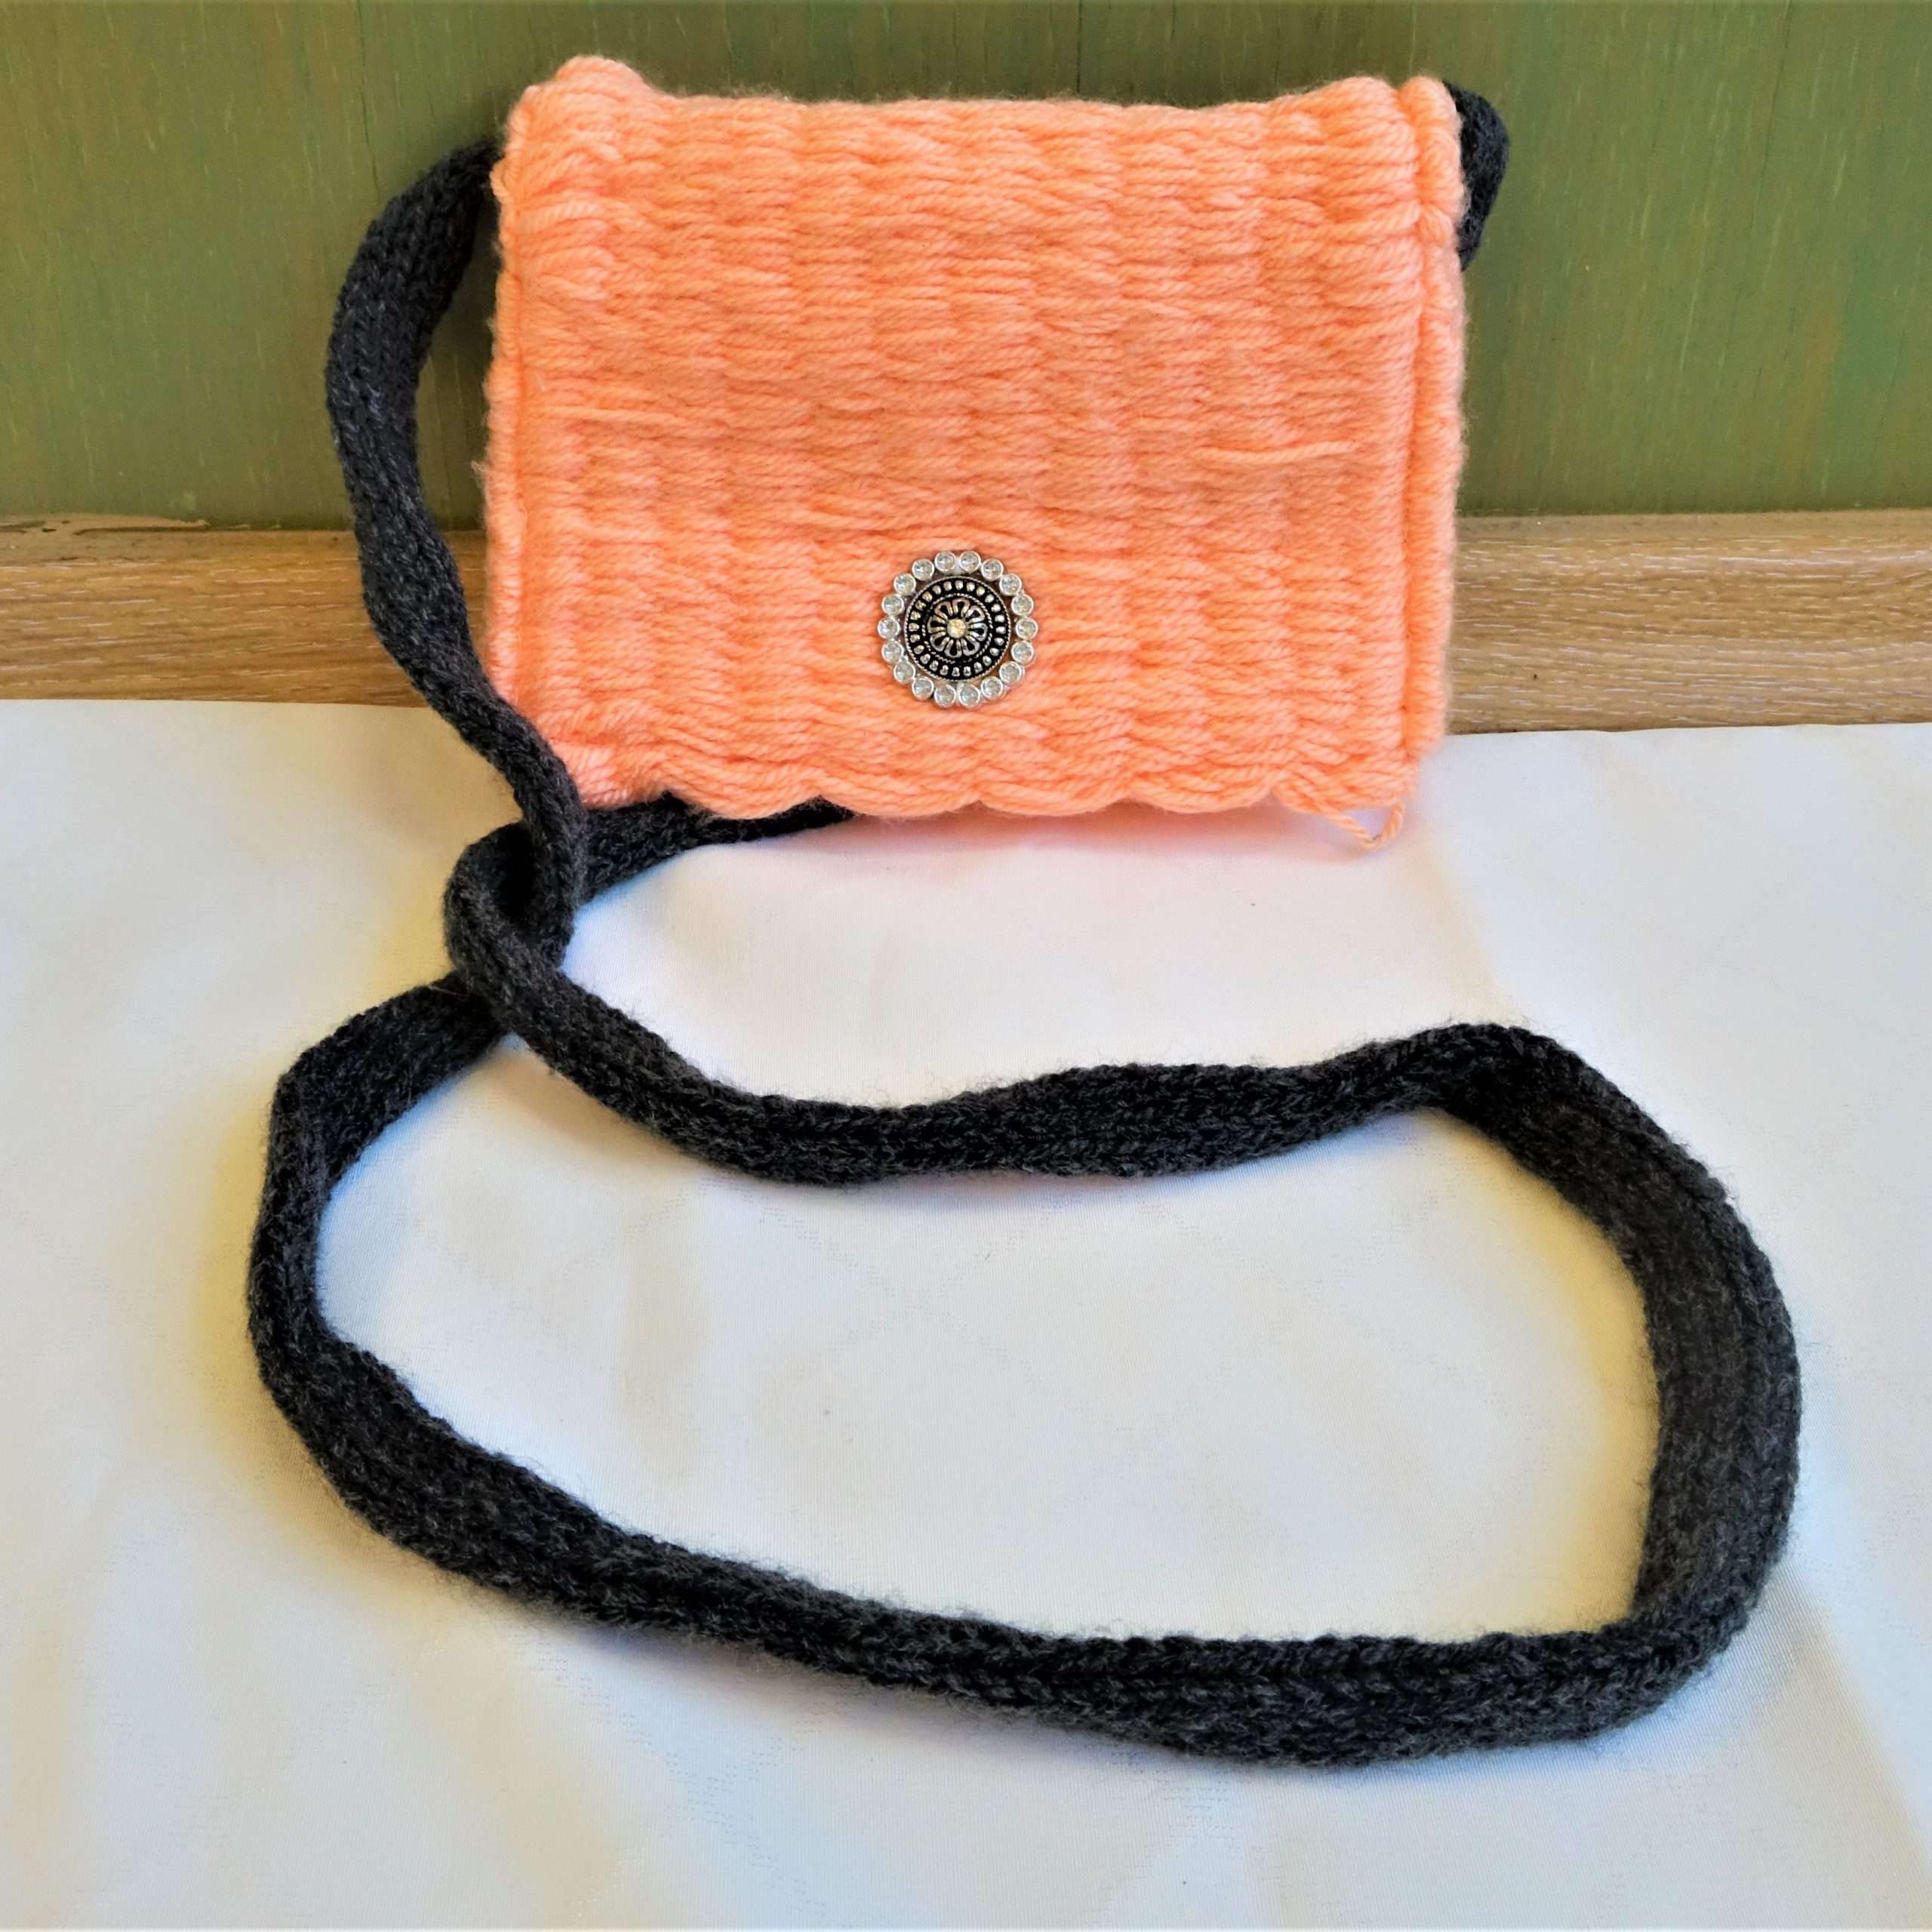 A Tarisznya szövéssel készült puha, kisméretű szőttes, amely bélésanyaggal rendelkezik. A táska világos narancsszínű, amelyen fém díszgomb található, a fekete színű füle hosszú, ezáltal vállon hordható.